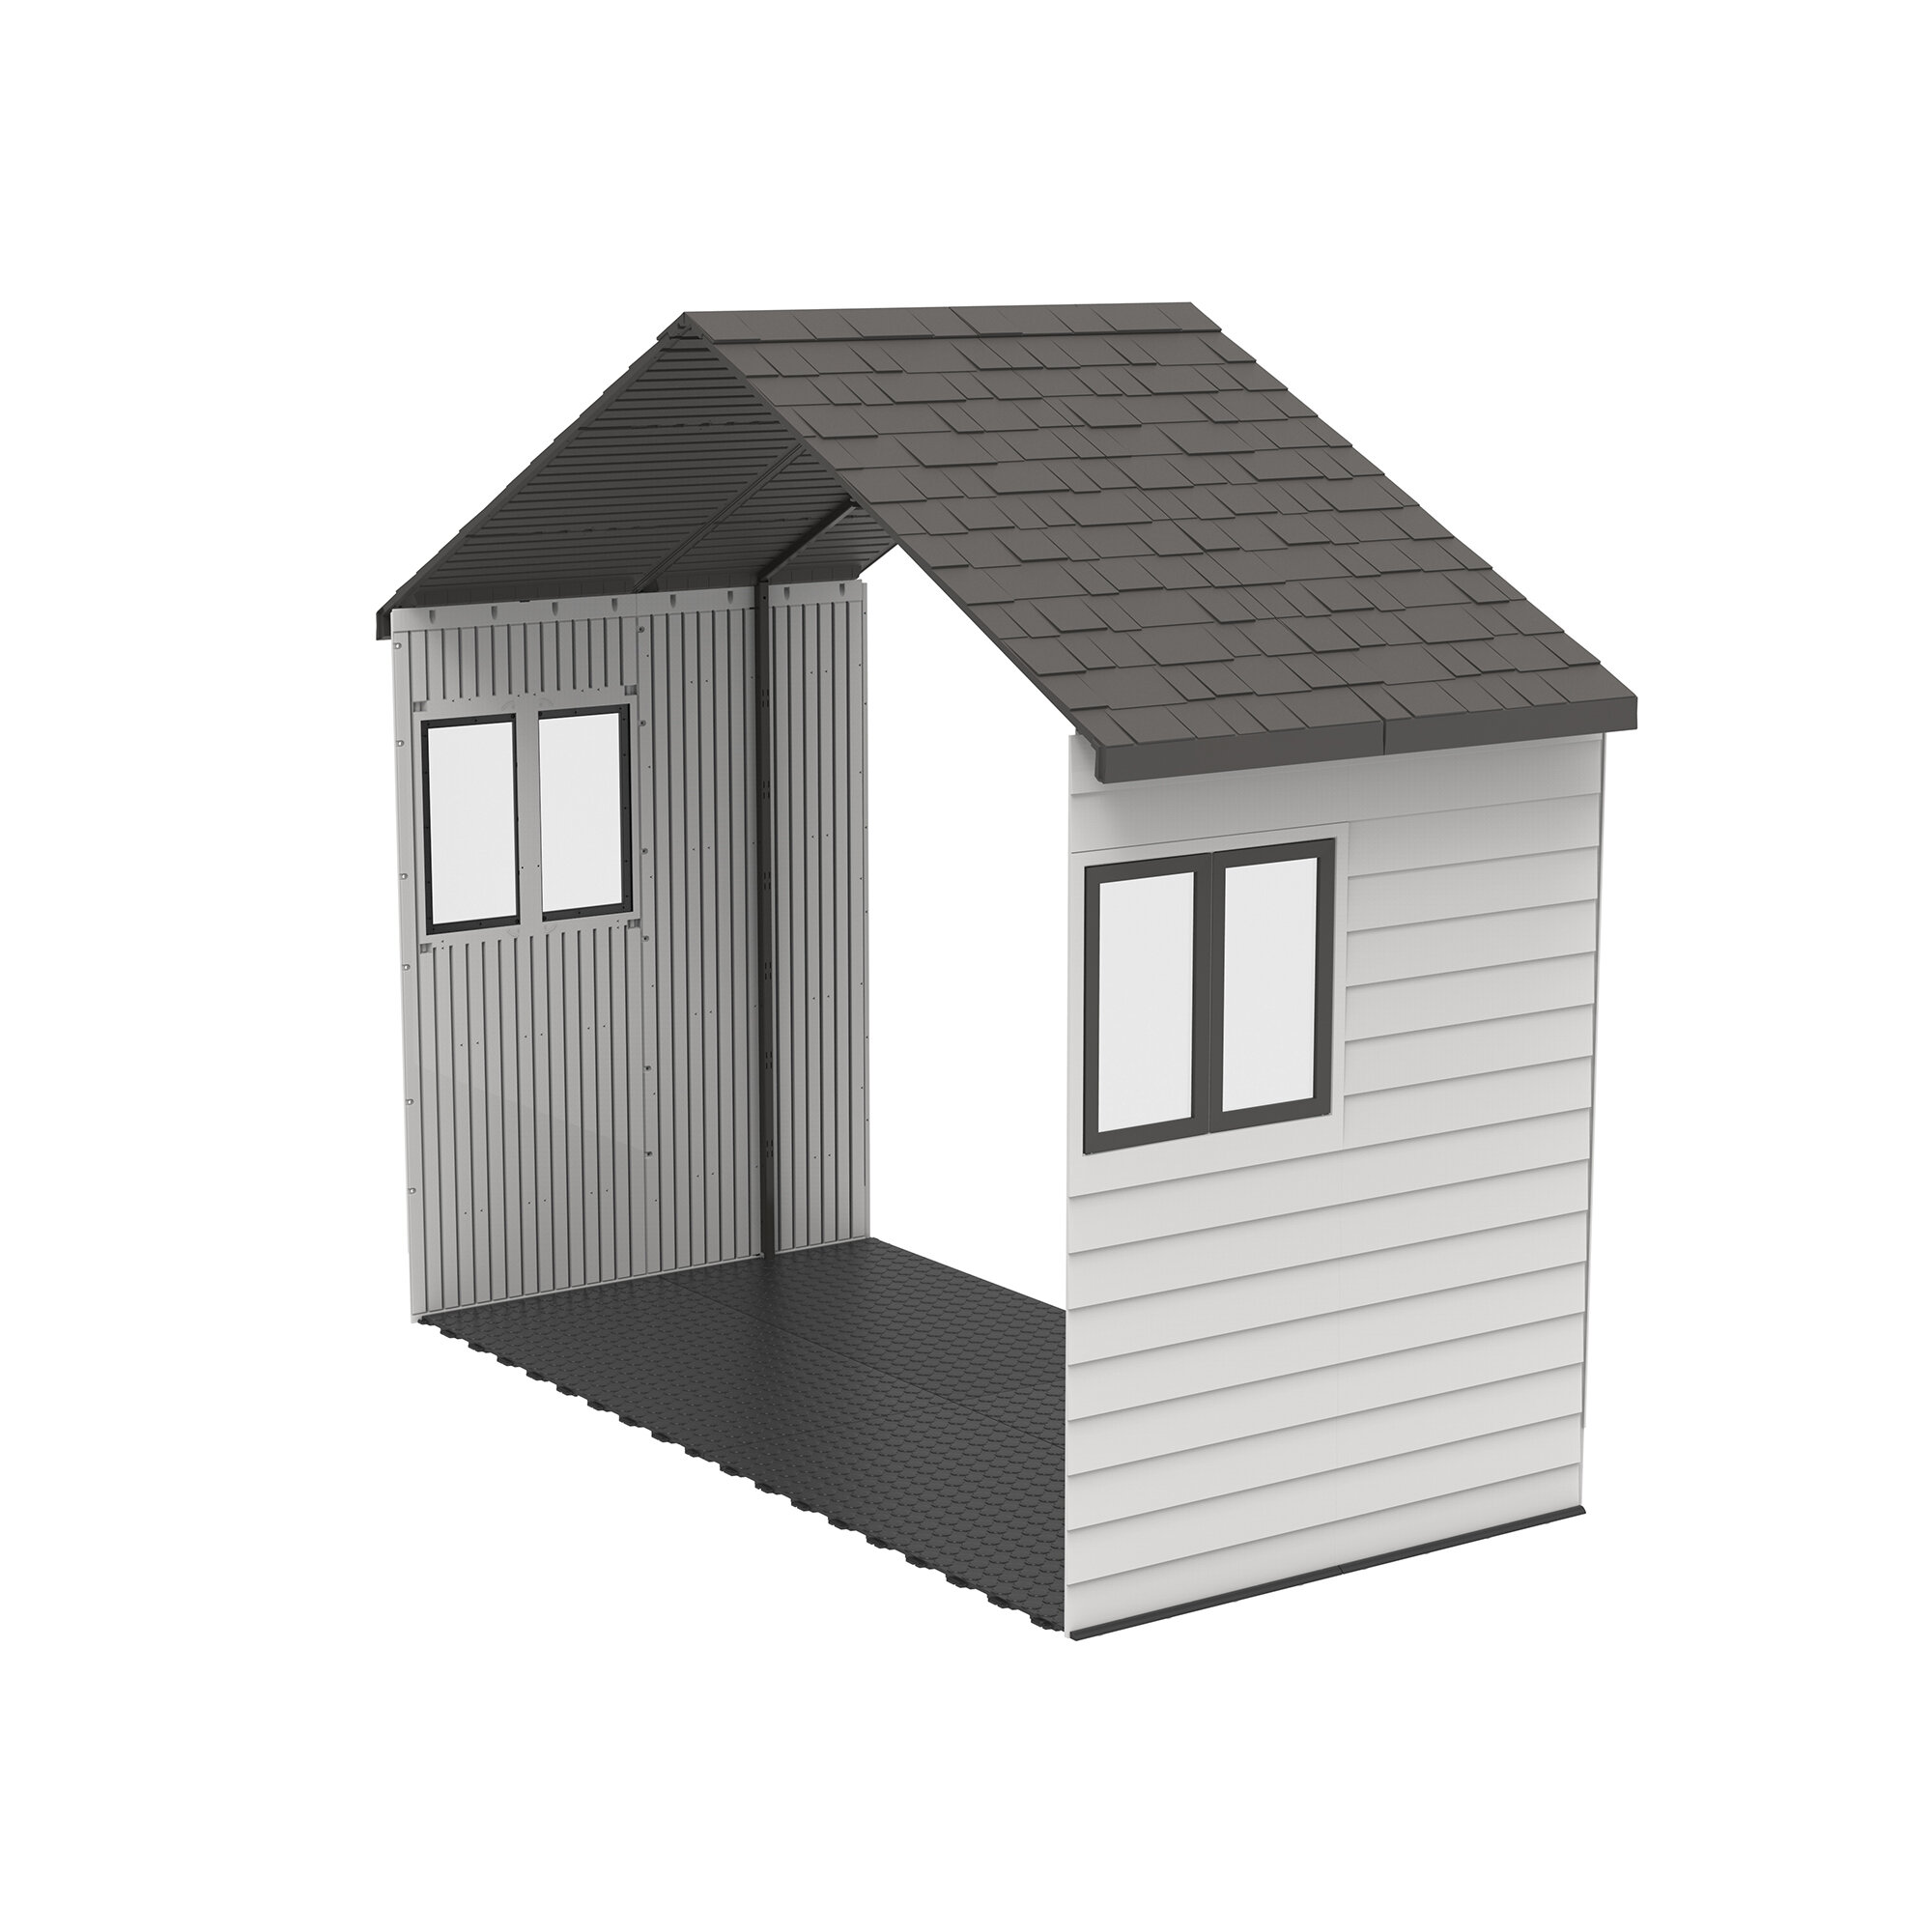 https://assets.wfcdn.com/im/76394939/compr-r85/1273/127372344/lifetime-high-density-polyethylene-plastic-storage-shed-extension-kit.jpg